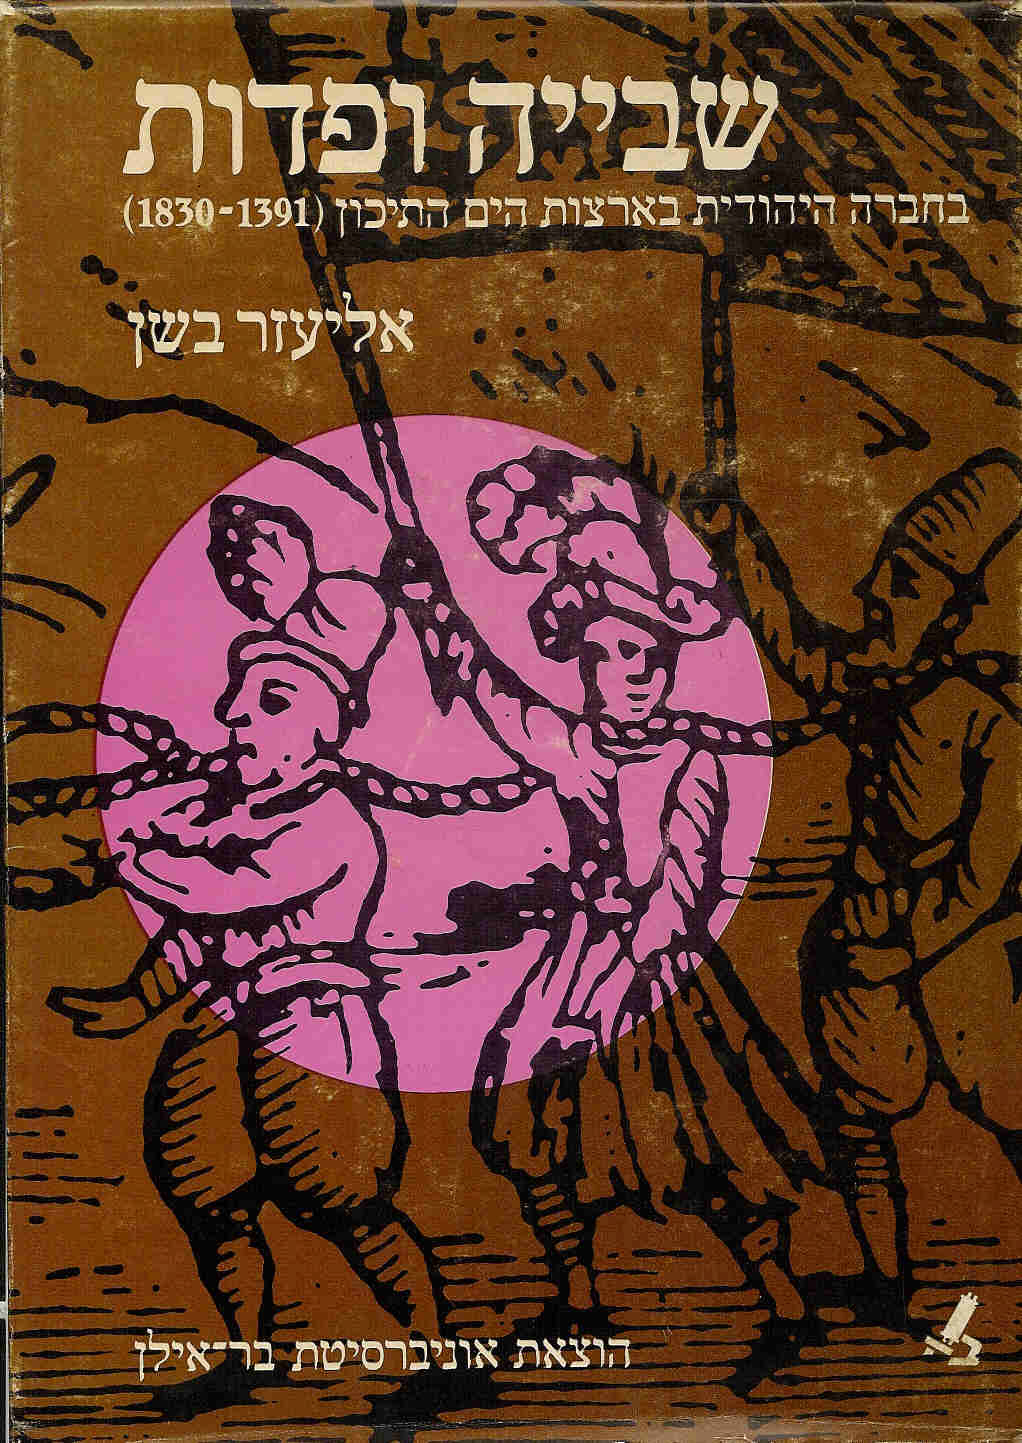 שבייה ופדות בחברה היהודית בארצות הים התיכון (1391 - 1830)